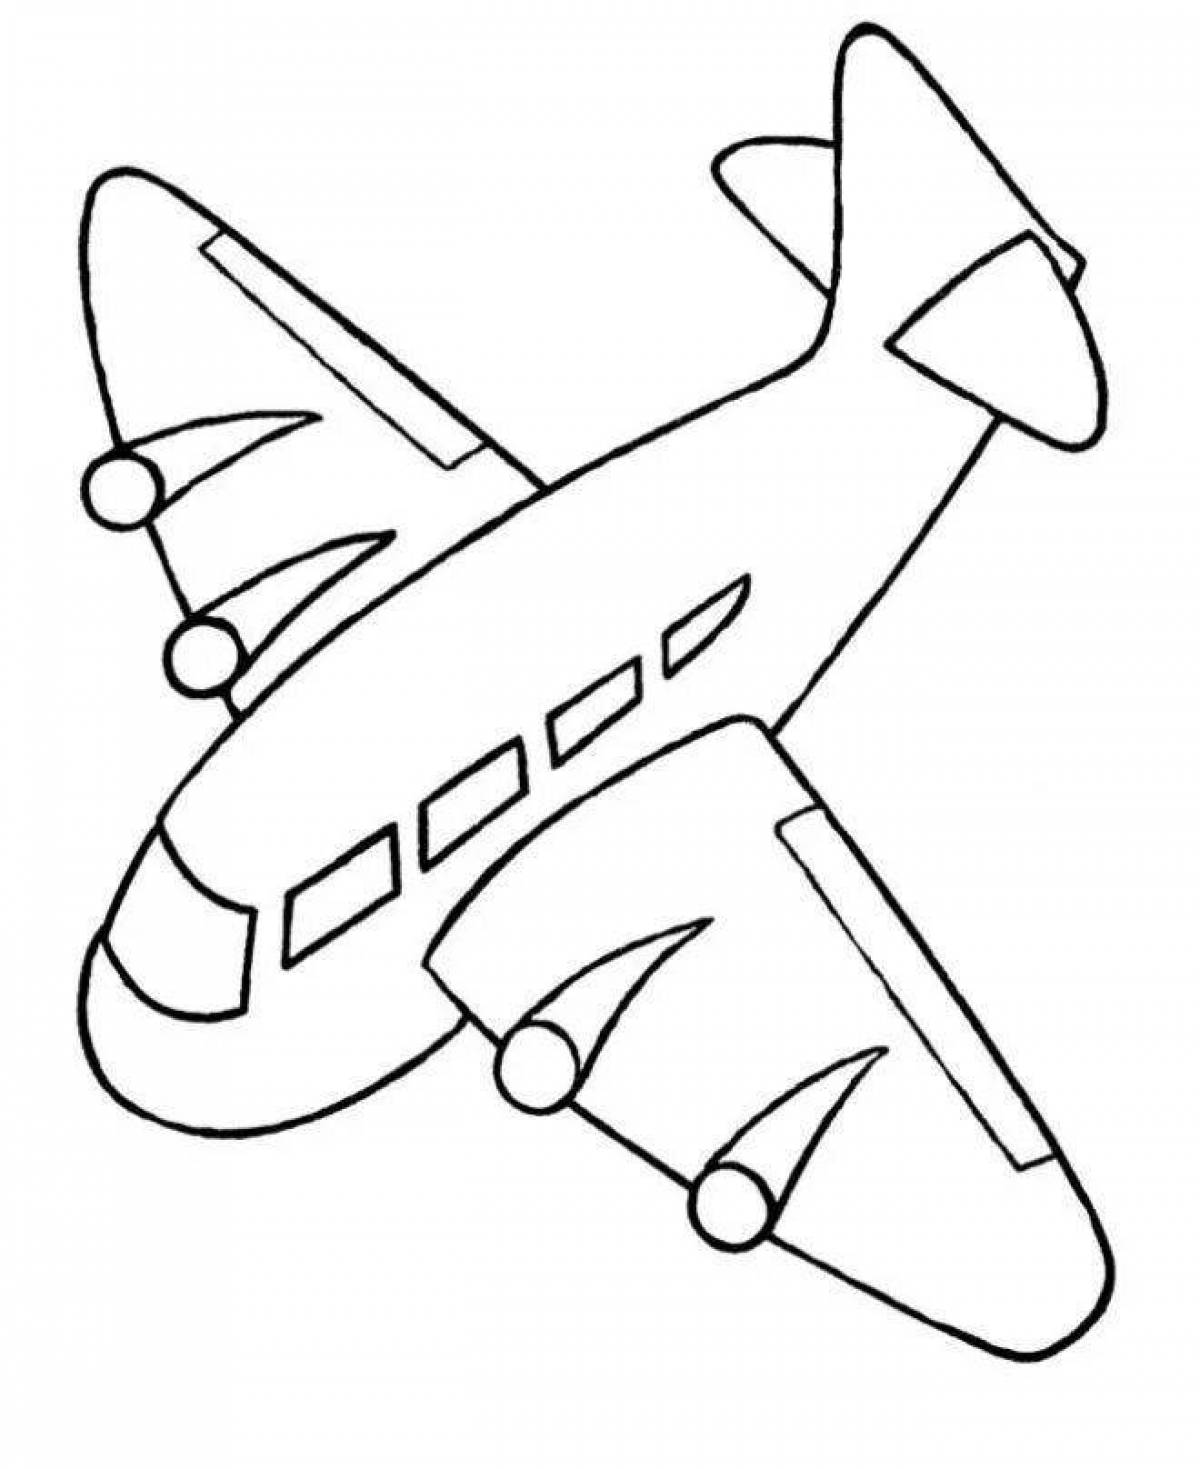 Dynamic plane coloring page